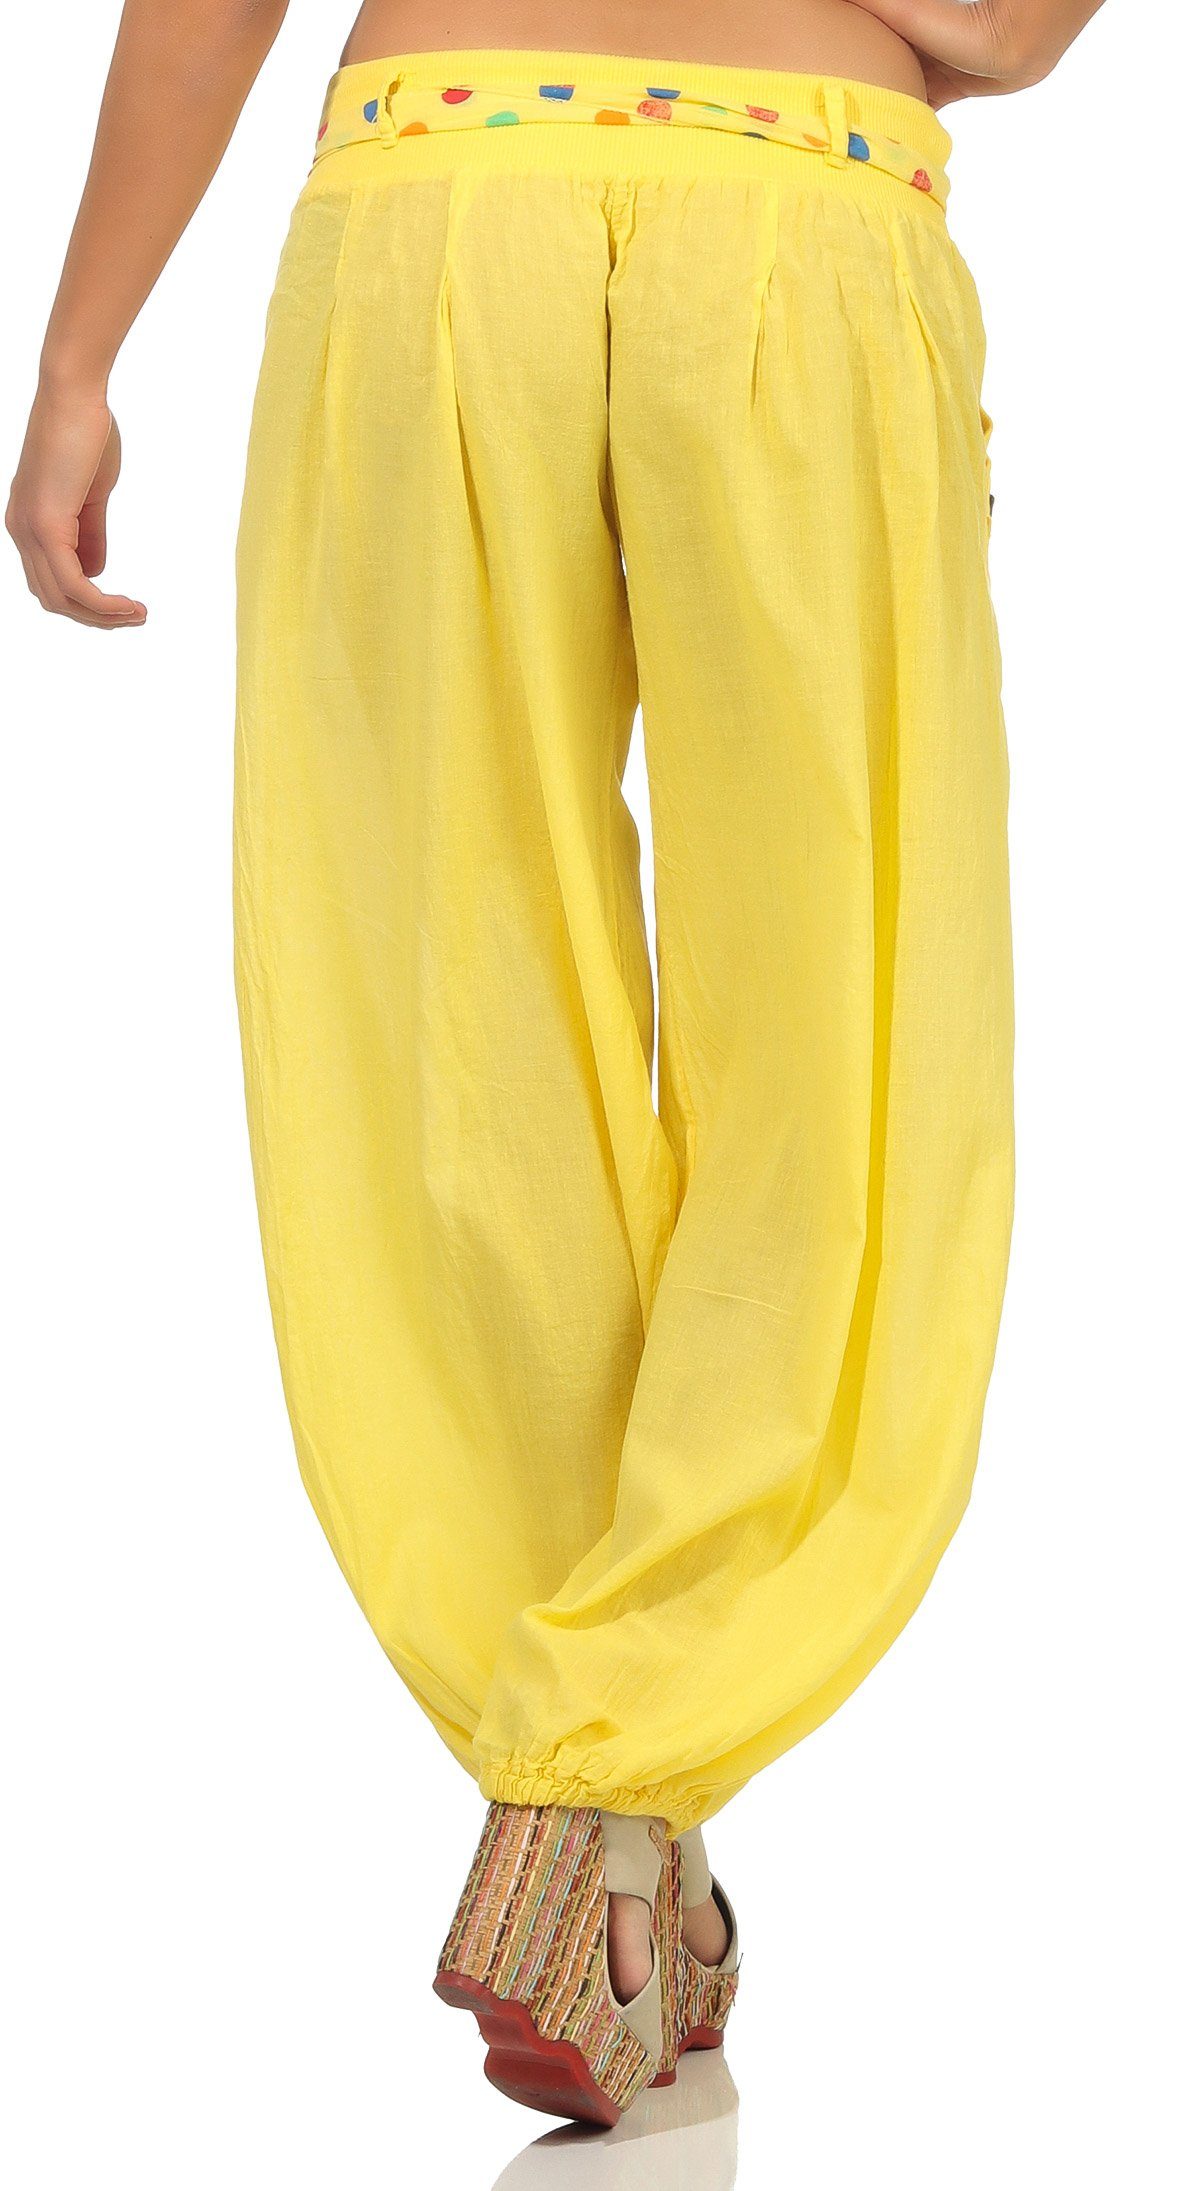 than 3417 gelb more fashion Einheitsgröße farblich Stoffgürtel malito Haremshose mit passendem